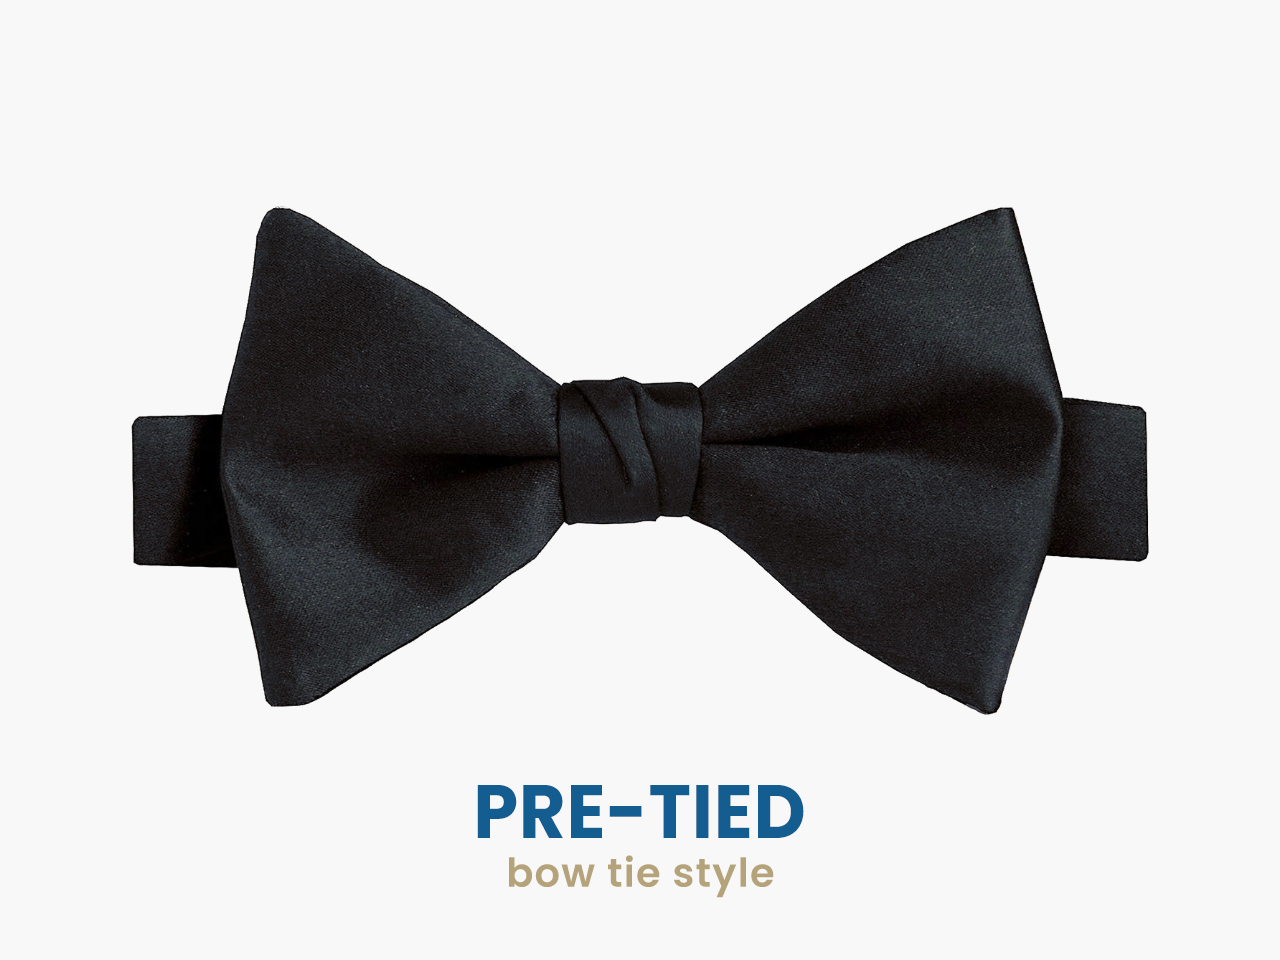 the pre-tied bow tie